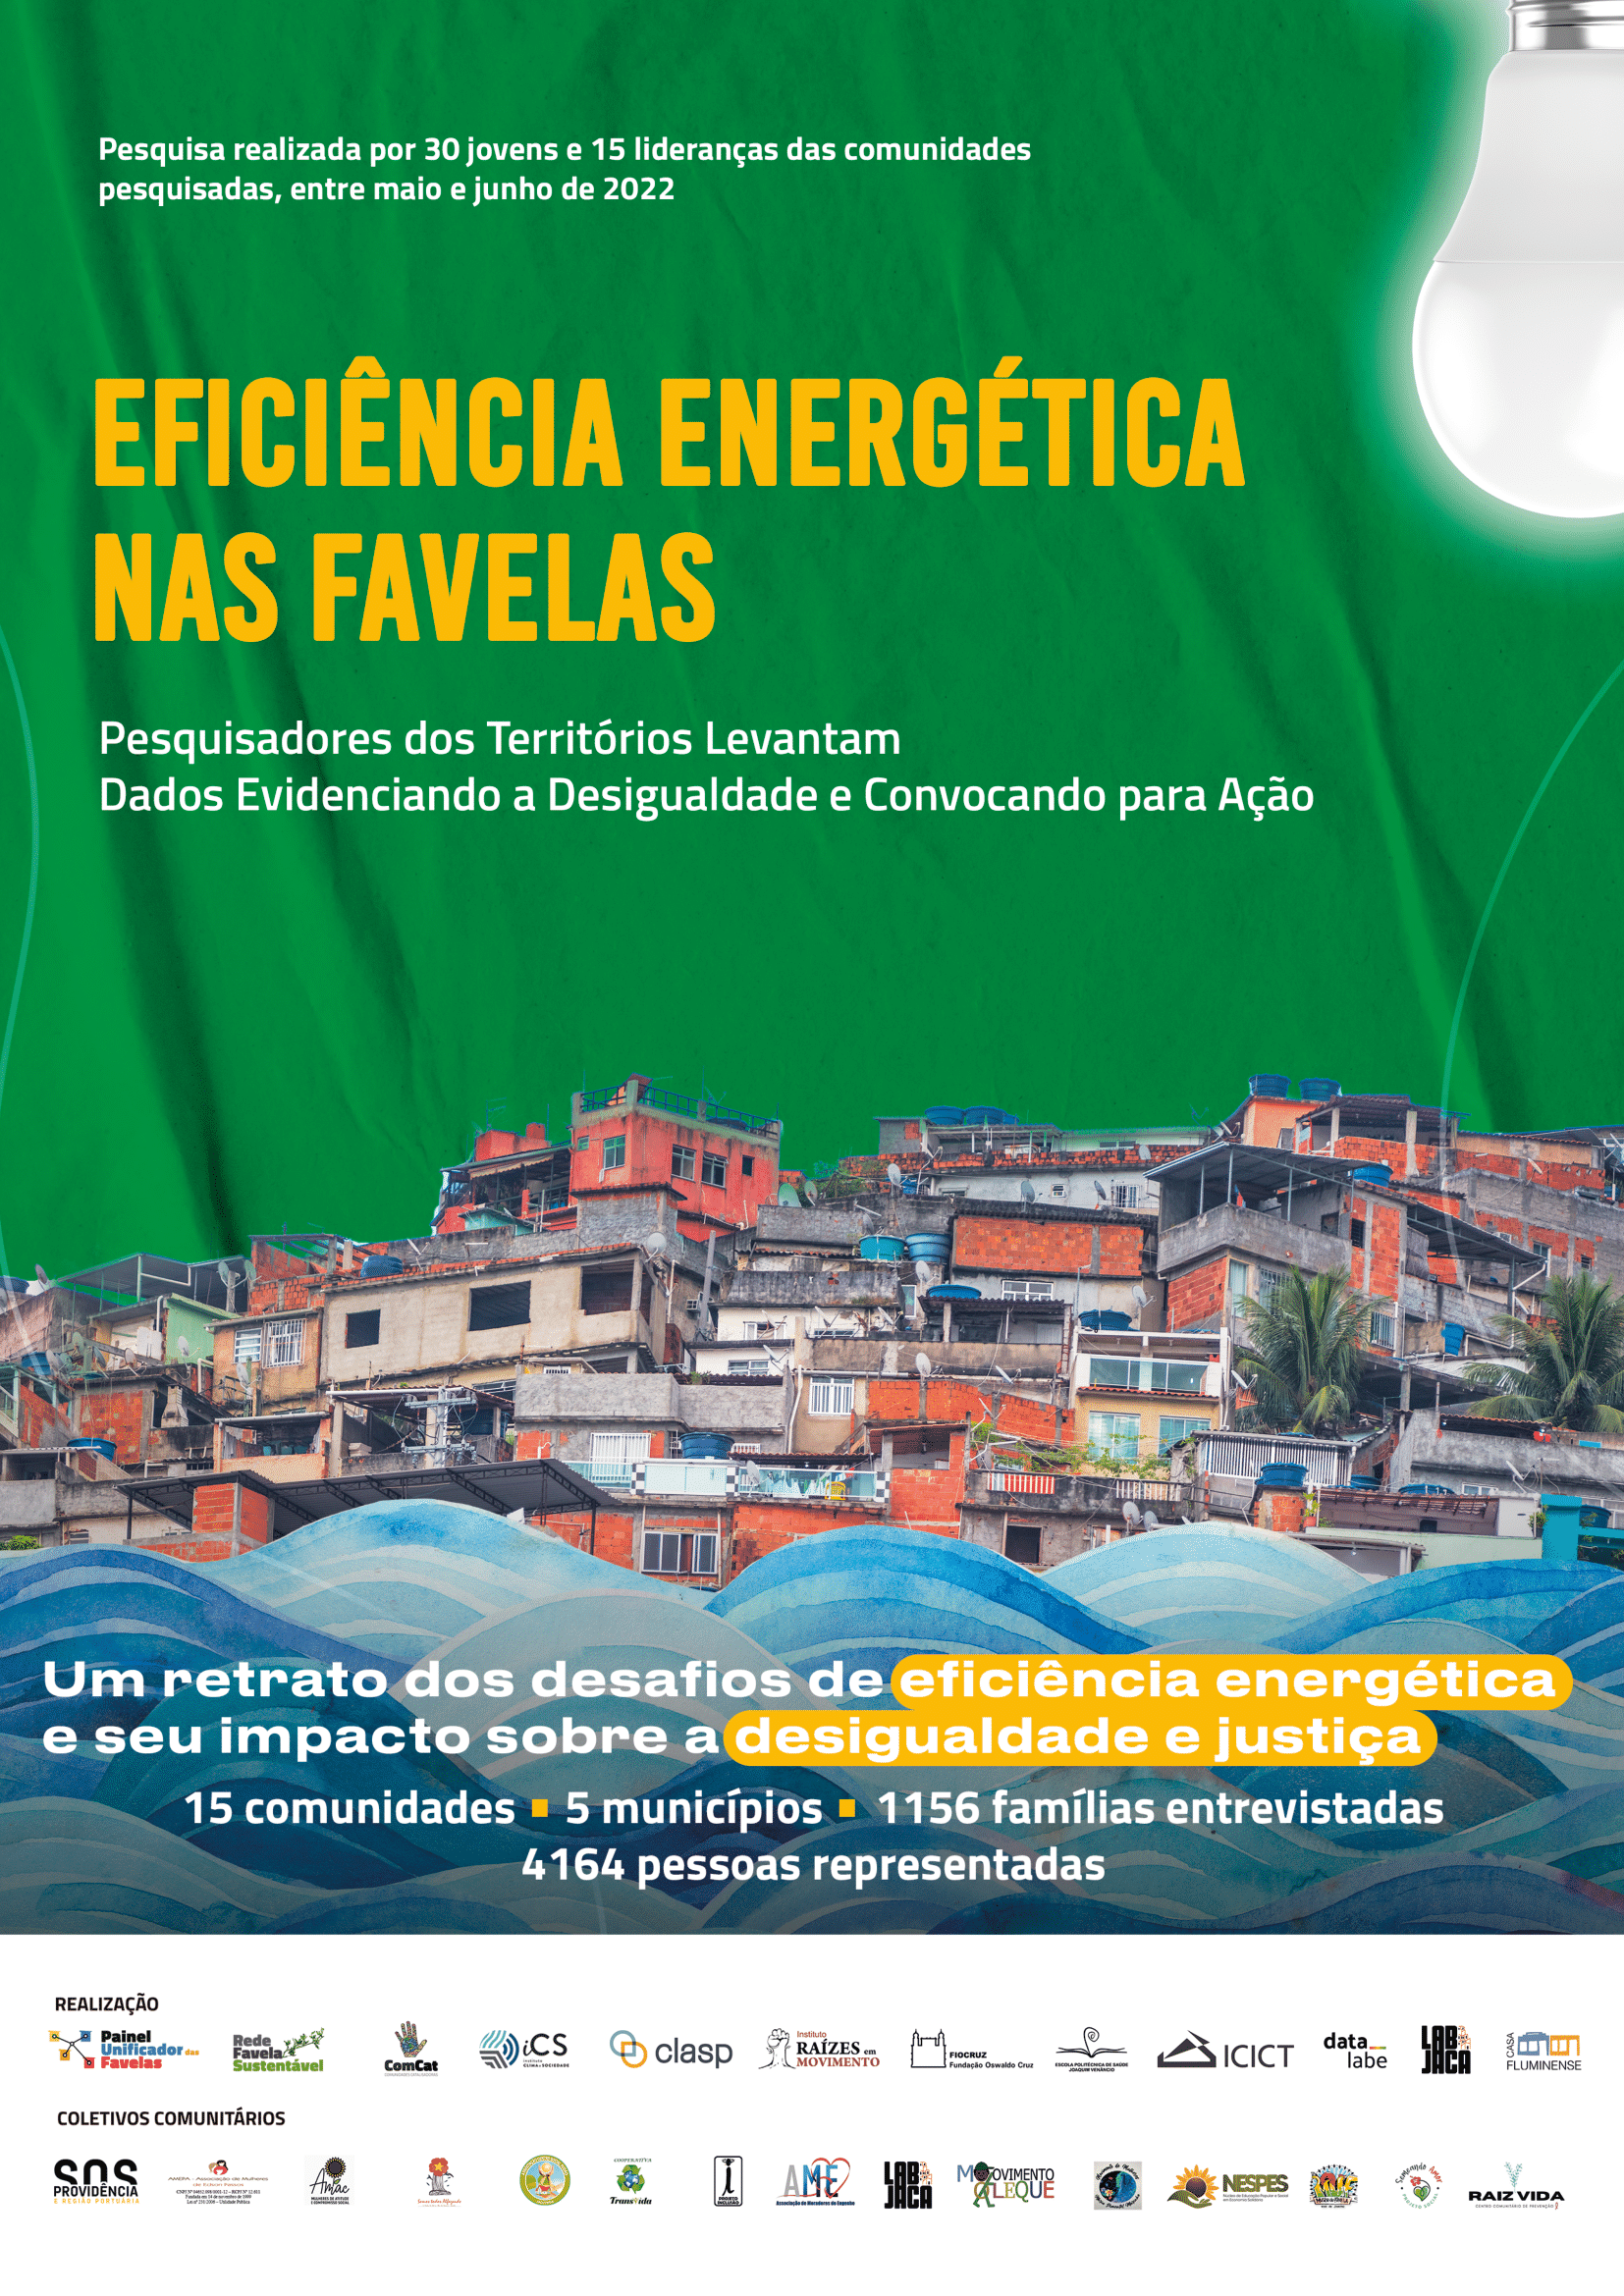 Relatório 'Eficiência Energética nas Favelas' reflete a realidade de 1.156 famílias (4.164 pessoas) em 15 favelas de cinco municípios do Grande Rio